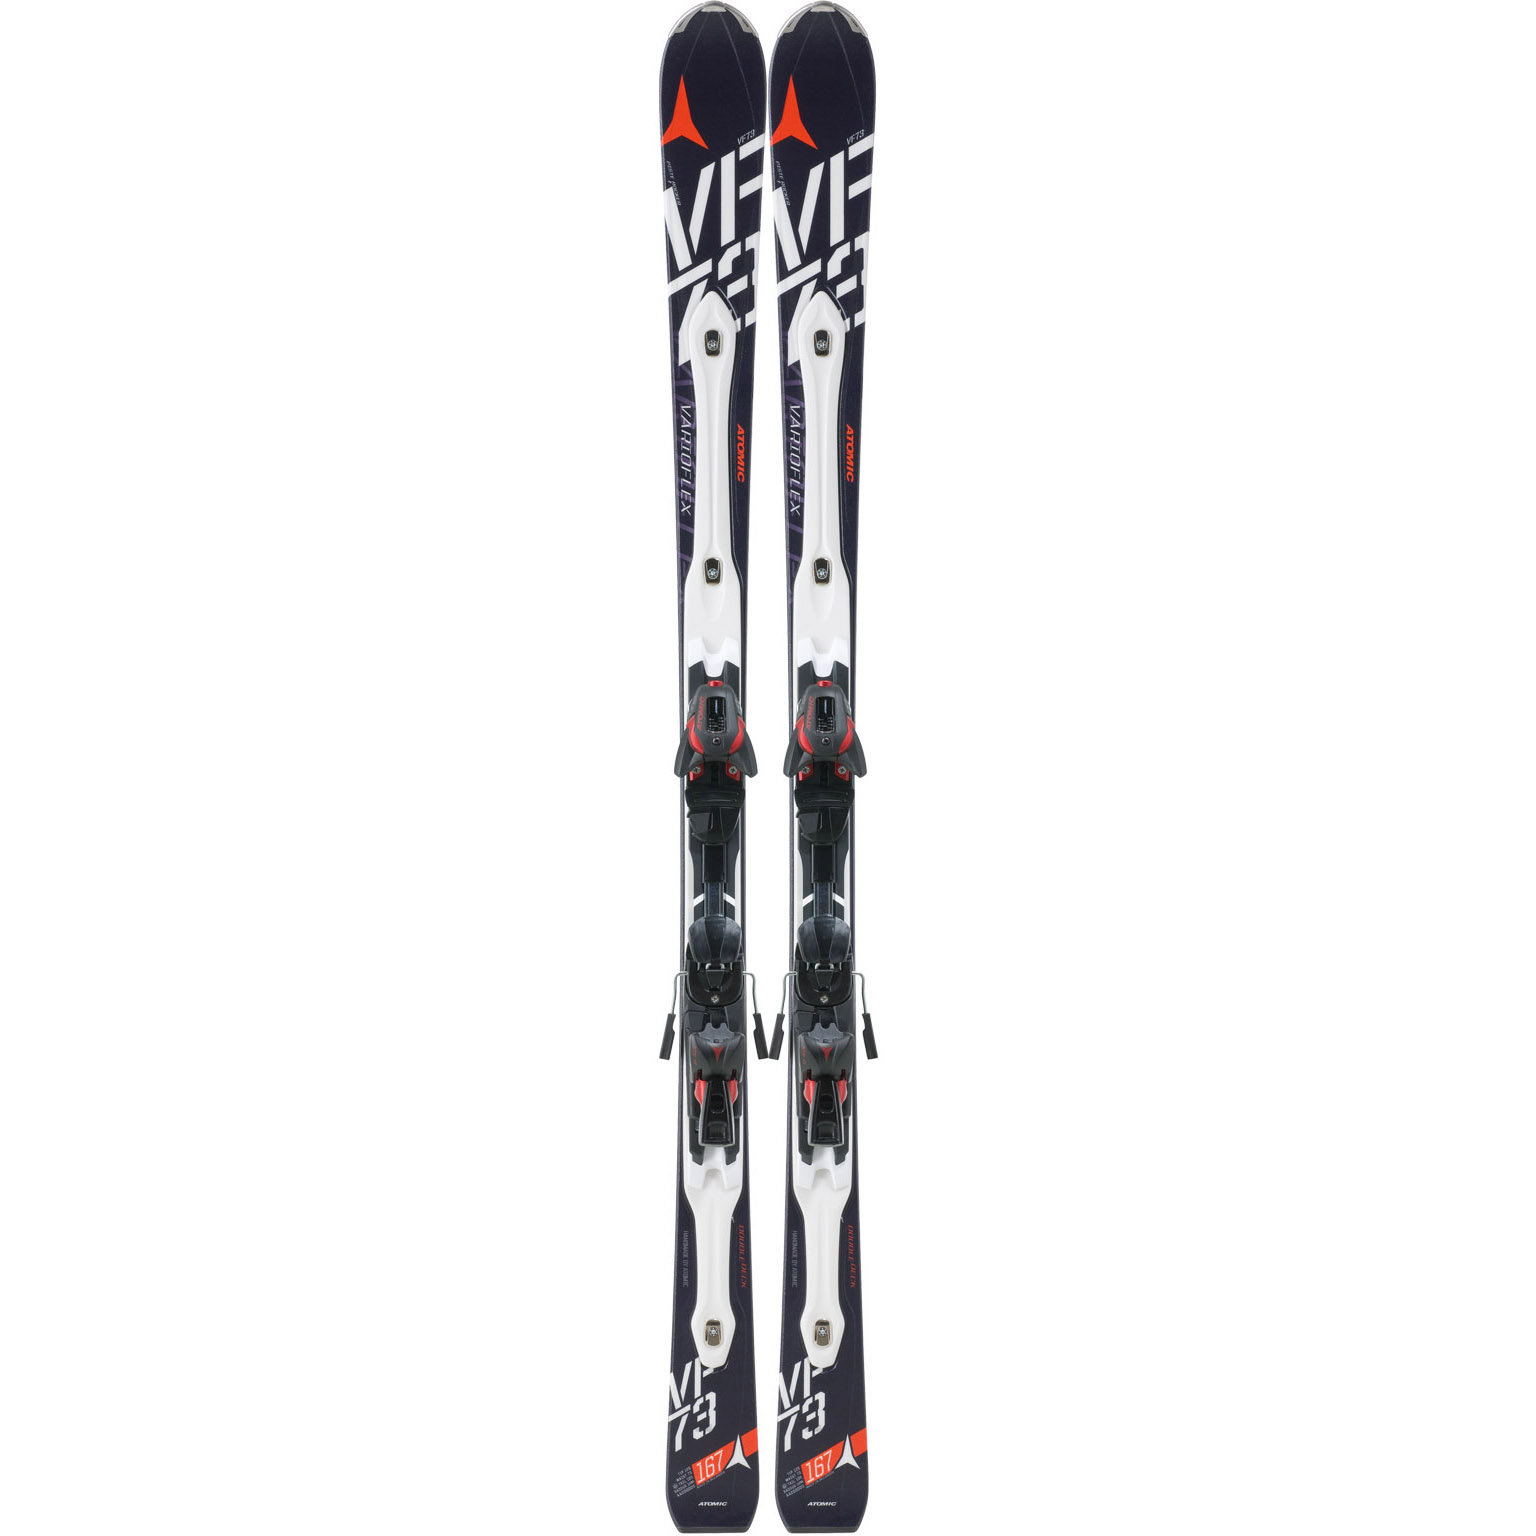 Ski | Atomic D2 VF 73 SMT | Ski equipment